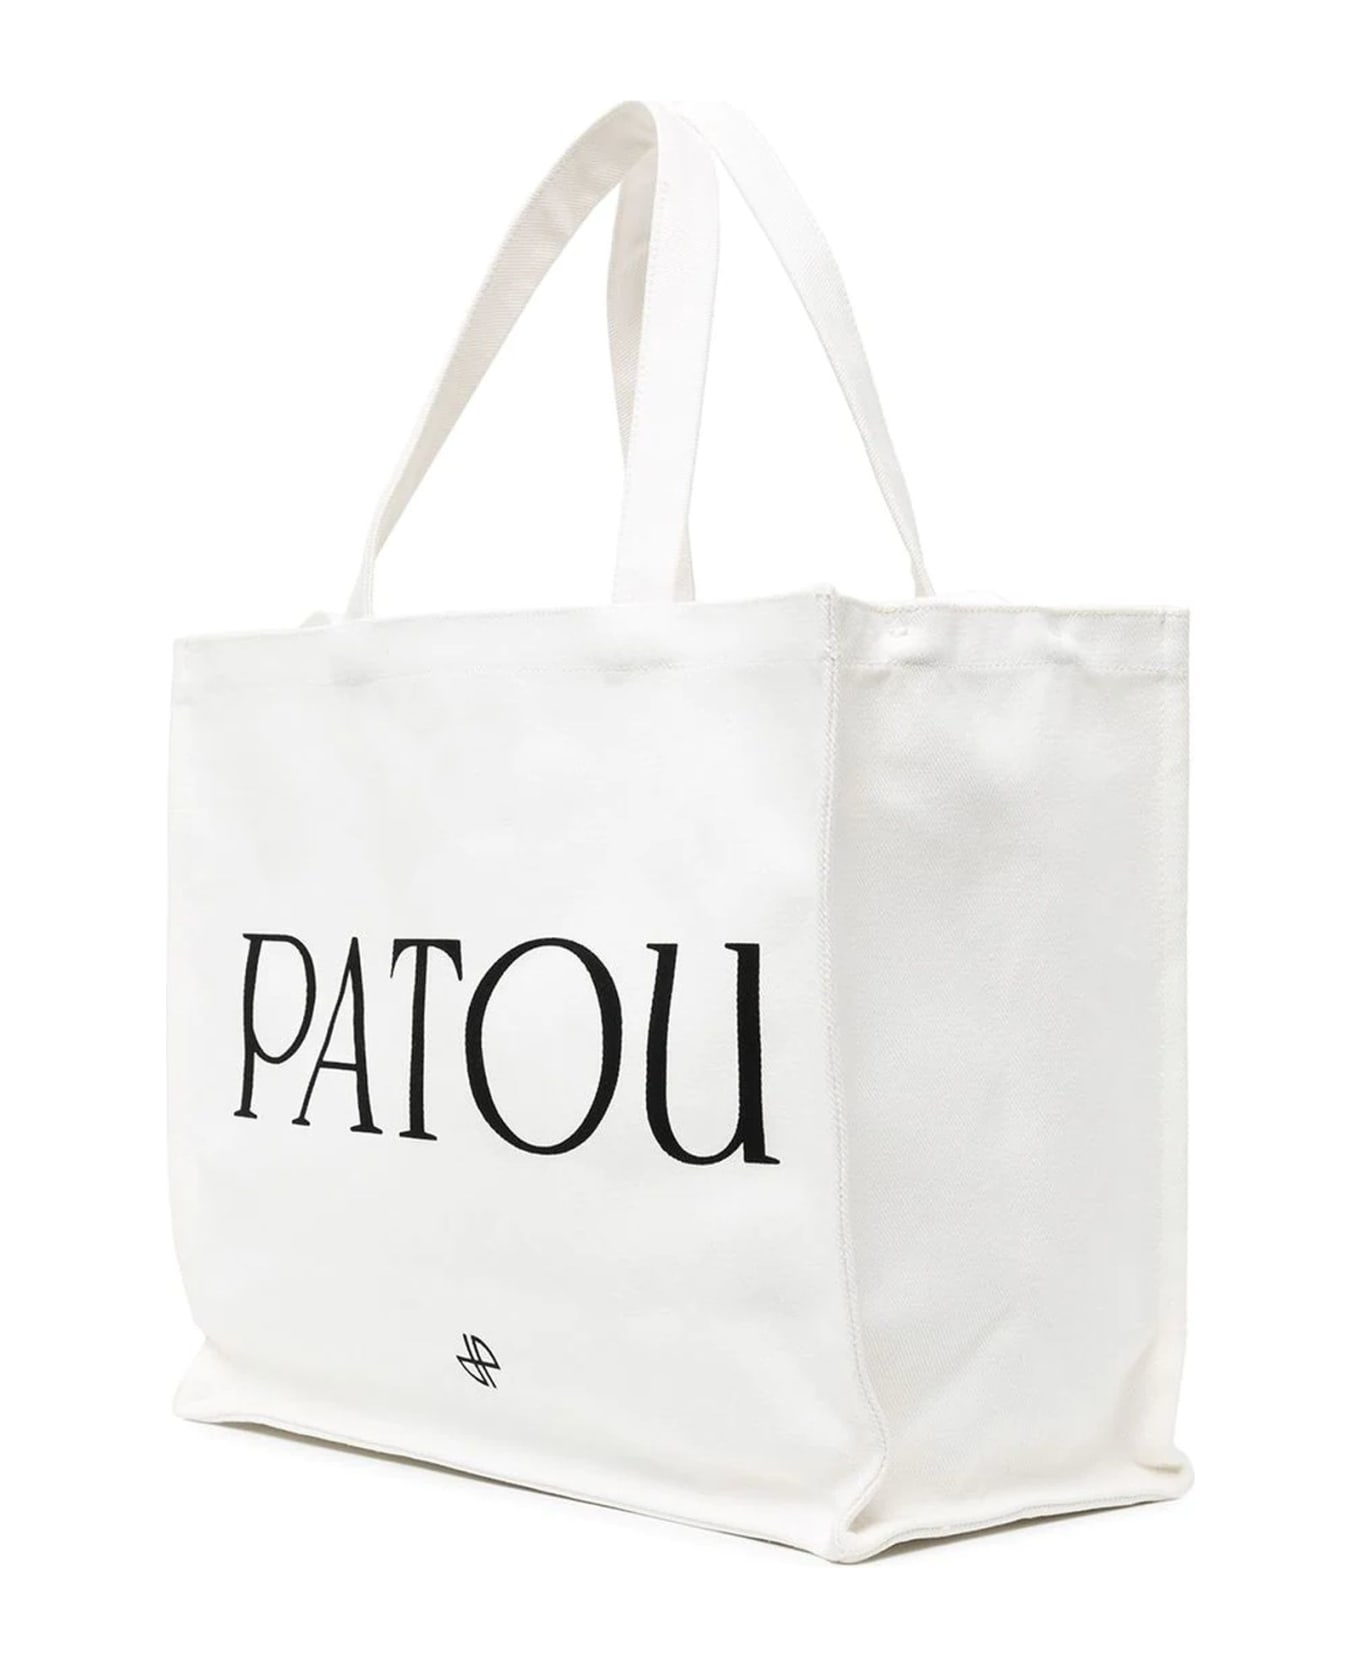 Patou White Cotton Tote Bag - White